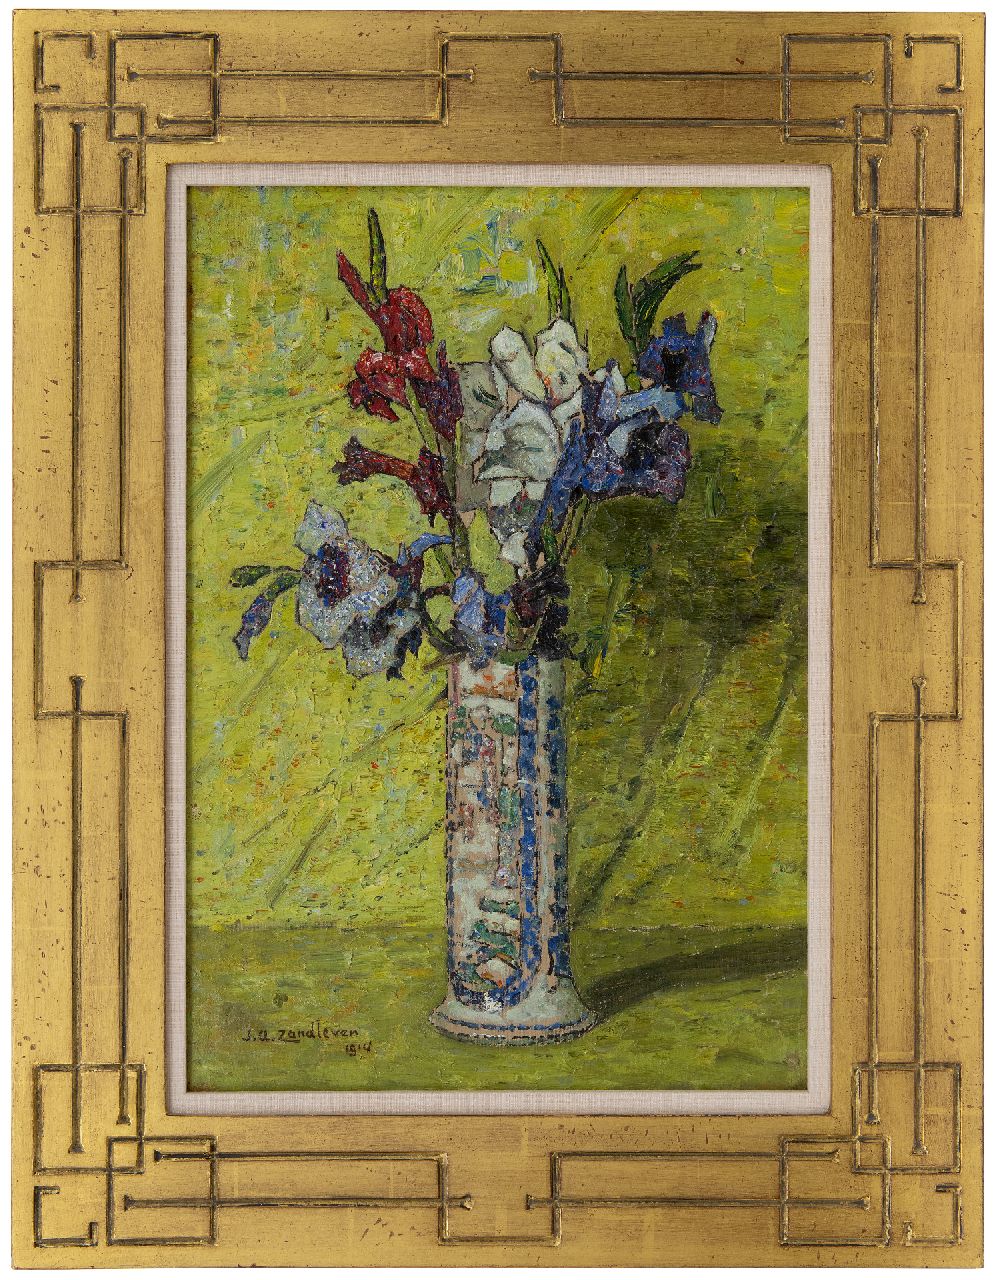 Zandleven J.A.  | Jan Adam Zandleven, Gladiolen in een geglazuurde vaas, olieverf op doek 50,2 x 35,5 cm, gesigneerd linksonder en gedateerd 1914